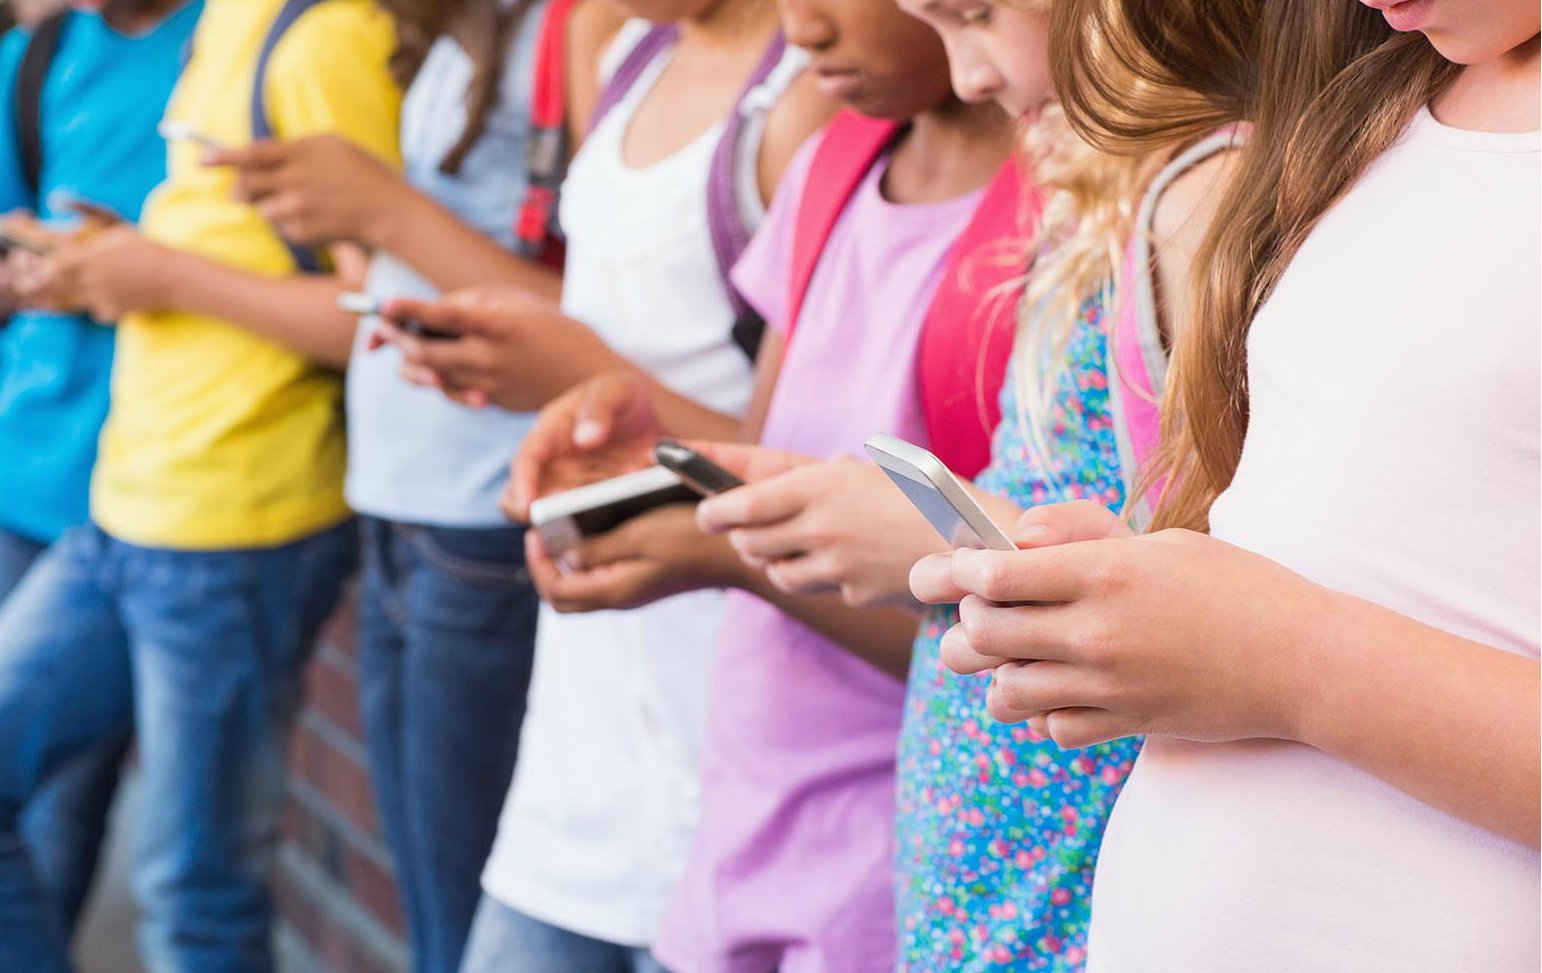 El Sumario - La plataforma digital debe regirse por la Ley de Protección de la Privacidad en Línea de los Niños a solo días de haber lanzado Messenger Kids